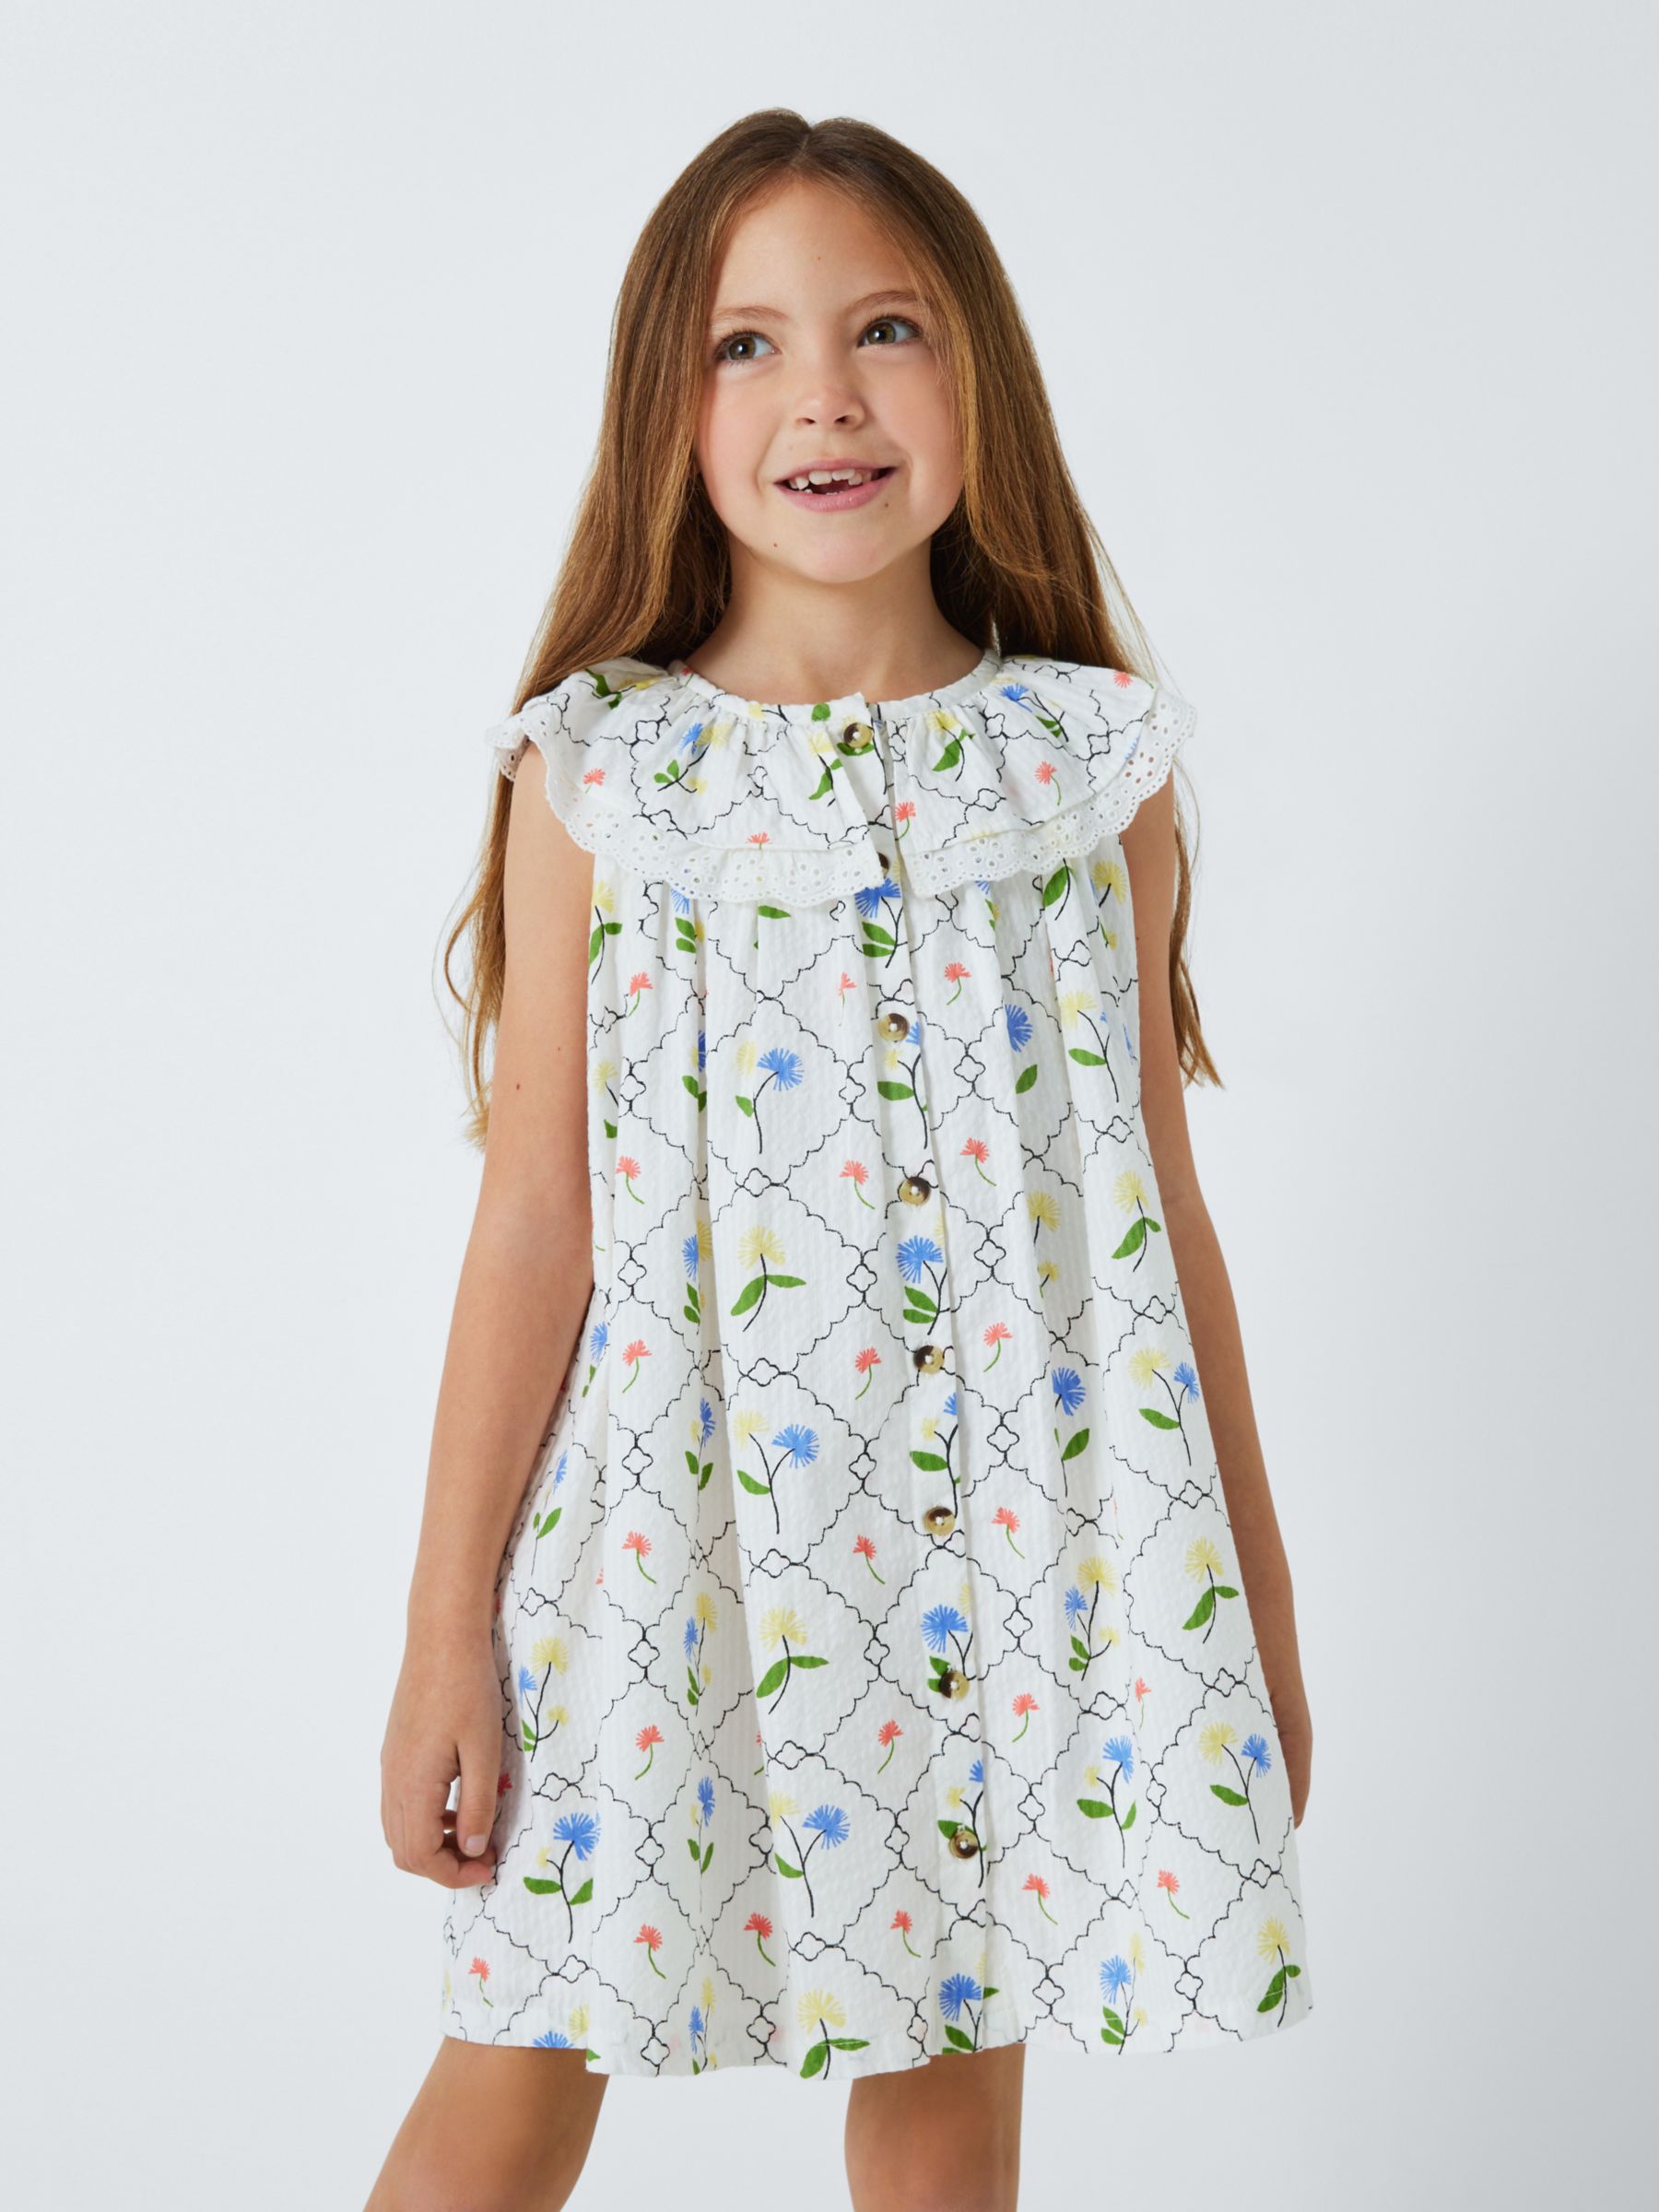 John Lewis Kids' Floral Sleeveless Dress, Gardenia, 9 years